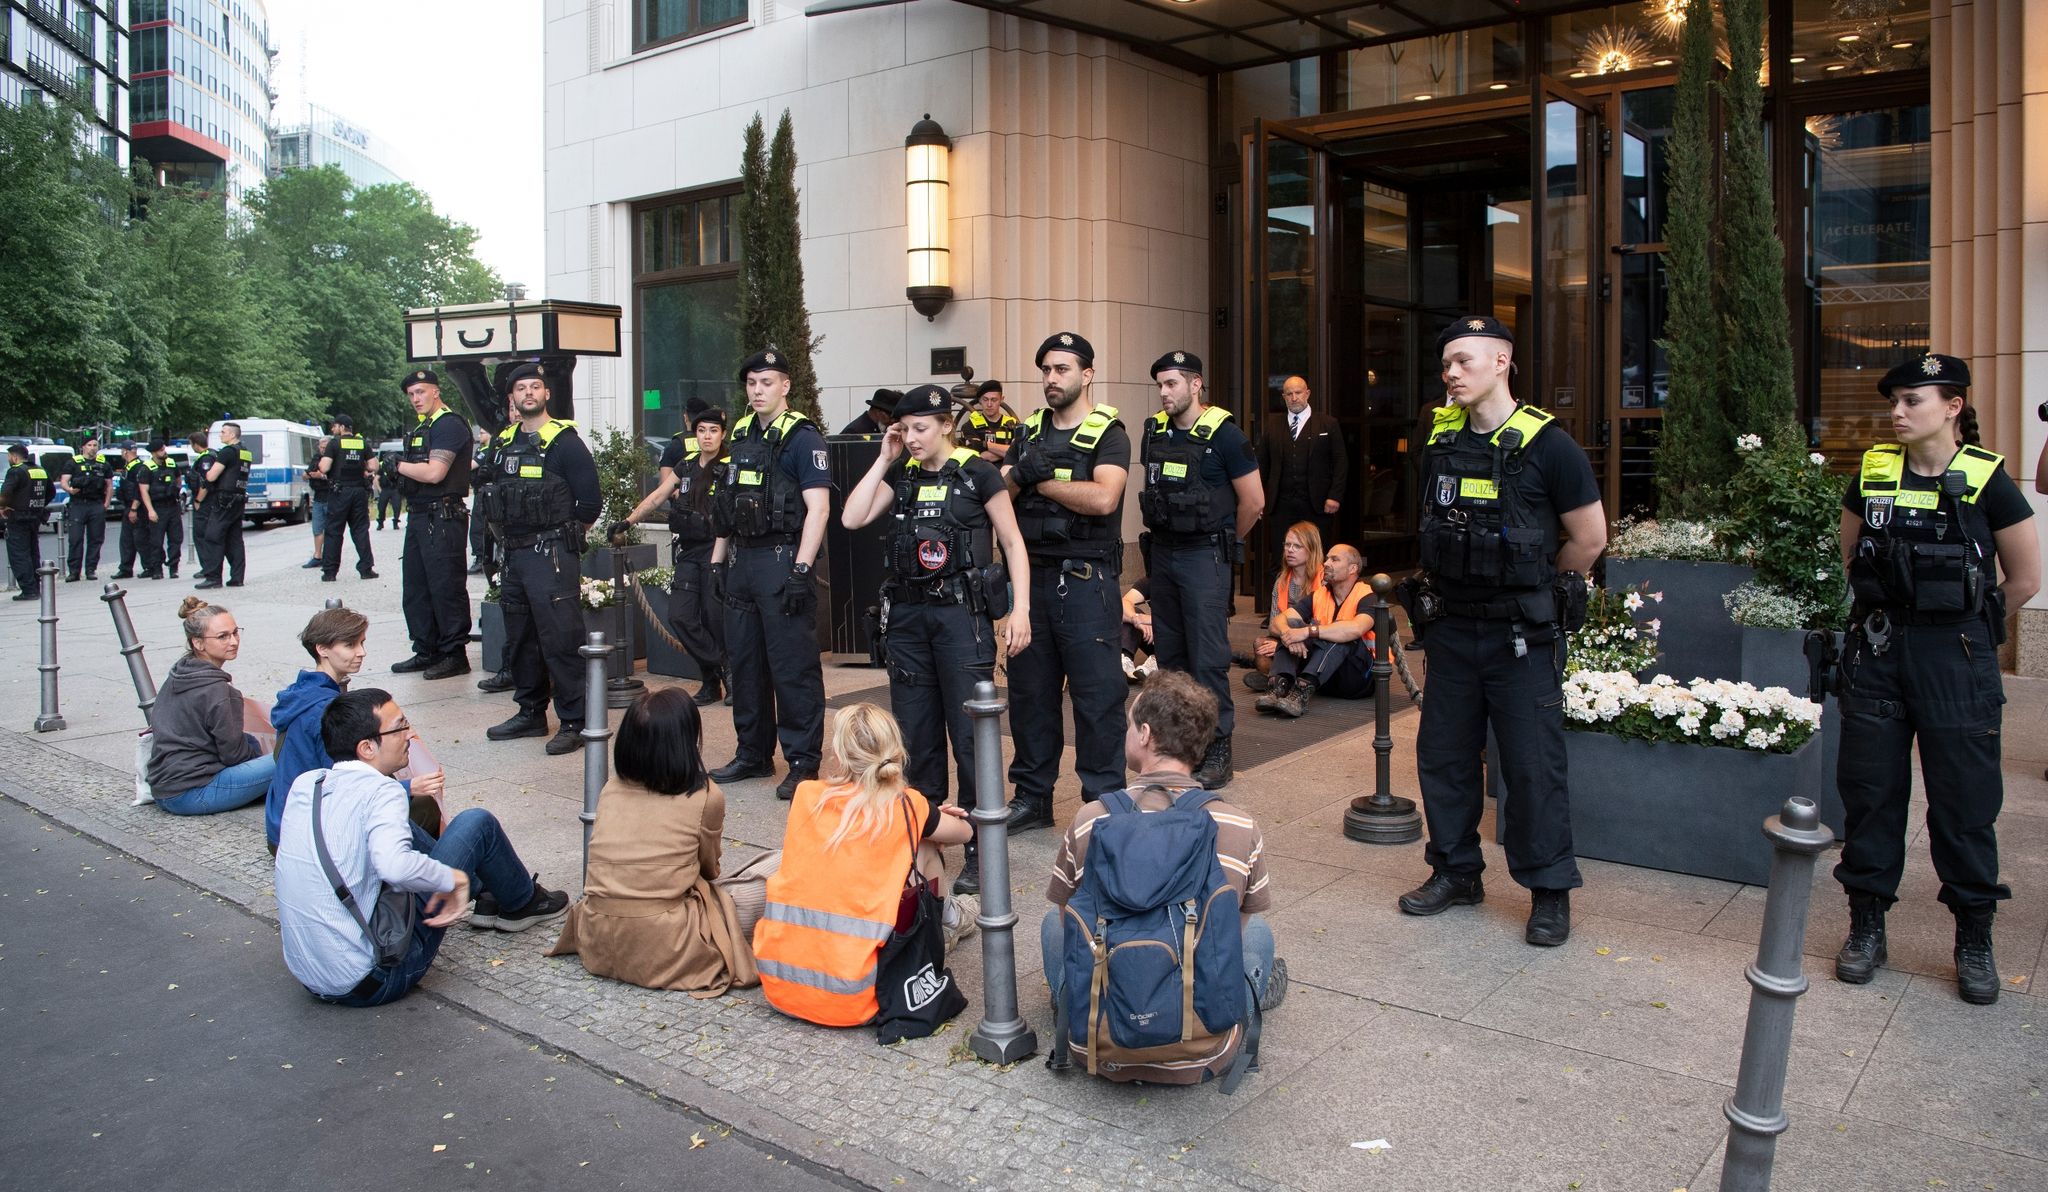 Polizeieinsatz am Haupteingang des Hotels Ritz-Carlton in Berlin, wo eine Protestaktion von Klima-Demonstranten stattfindet.